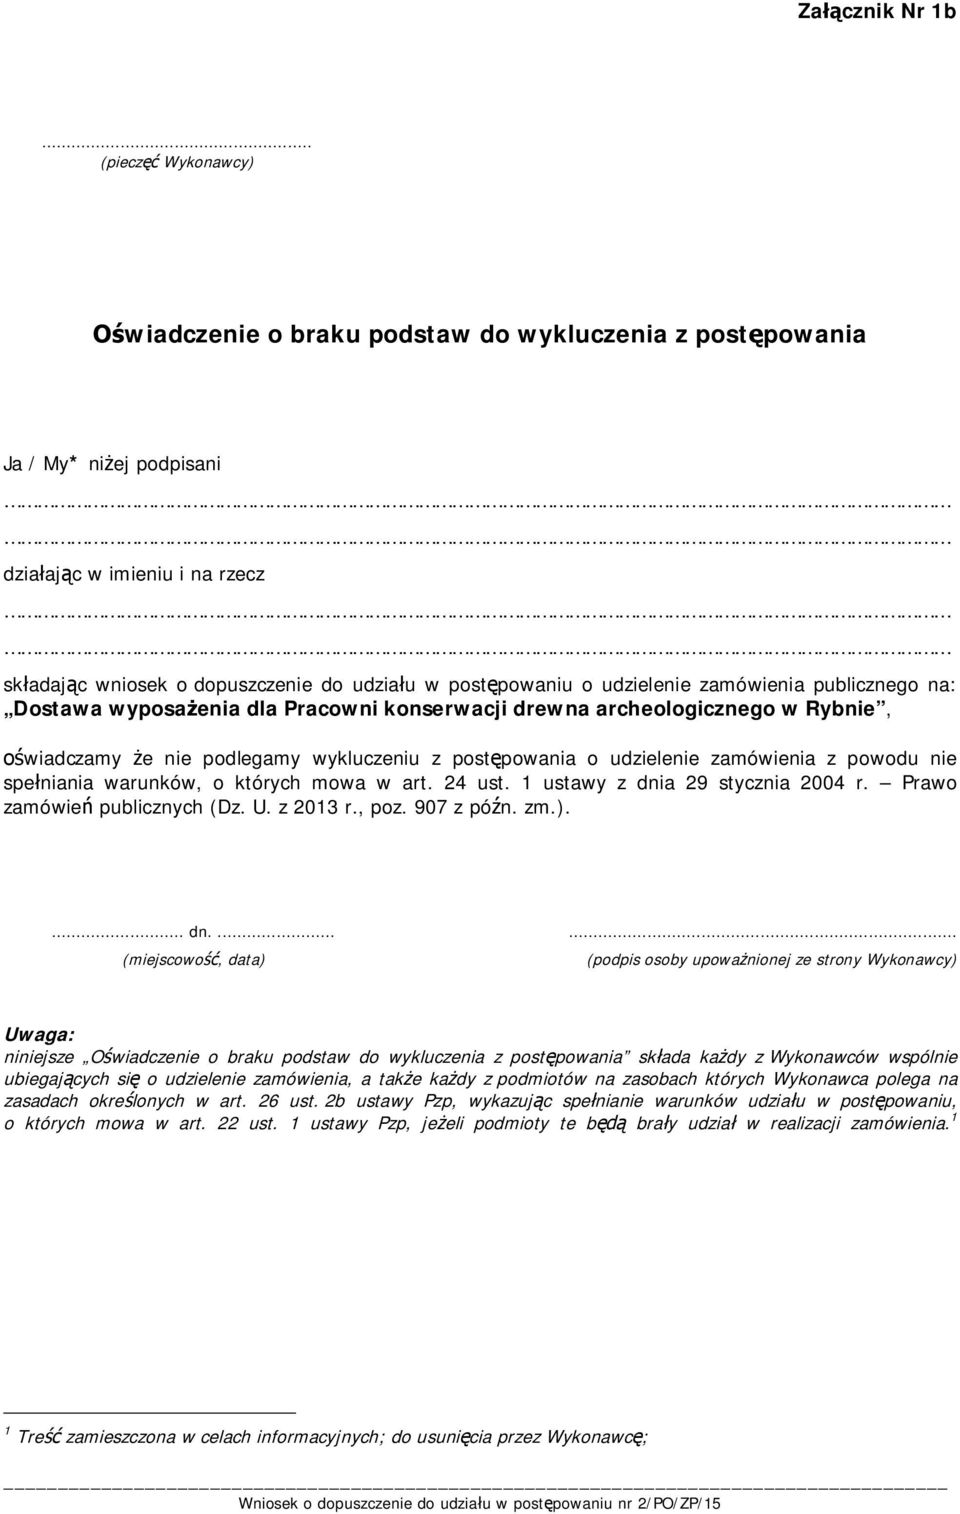 zamówienia publicznego na: Dostawa wyposażenia dla Pracowni konserwacji drewna archeologicznego w Rybnie, oświadczamy że nie podlegamy wykluczeniu z postępowania o udzielenie zamówienia z powodu nie